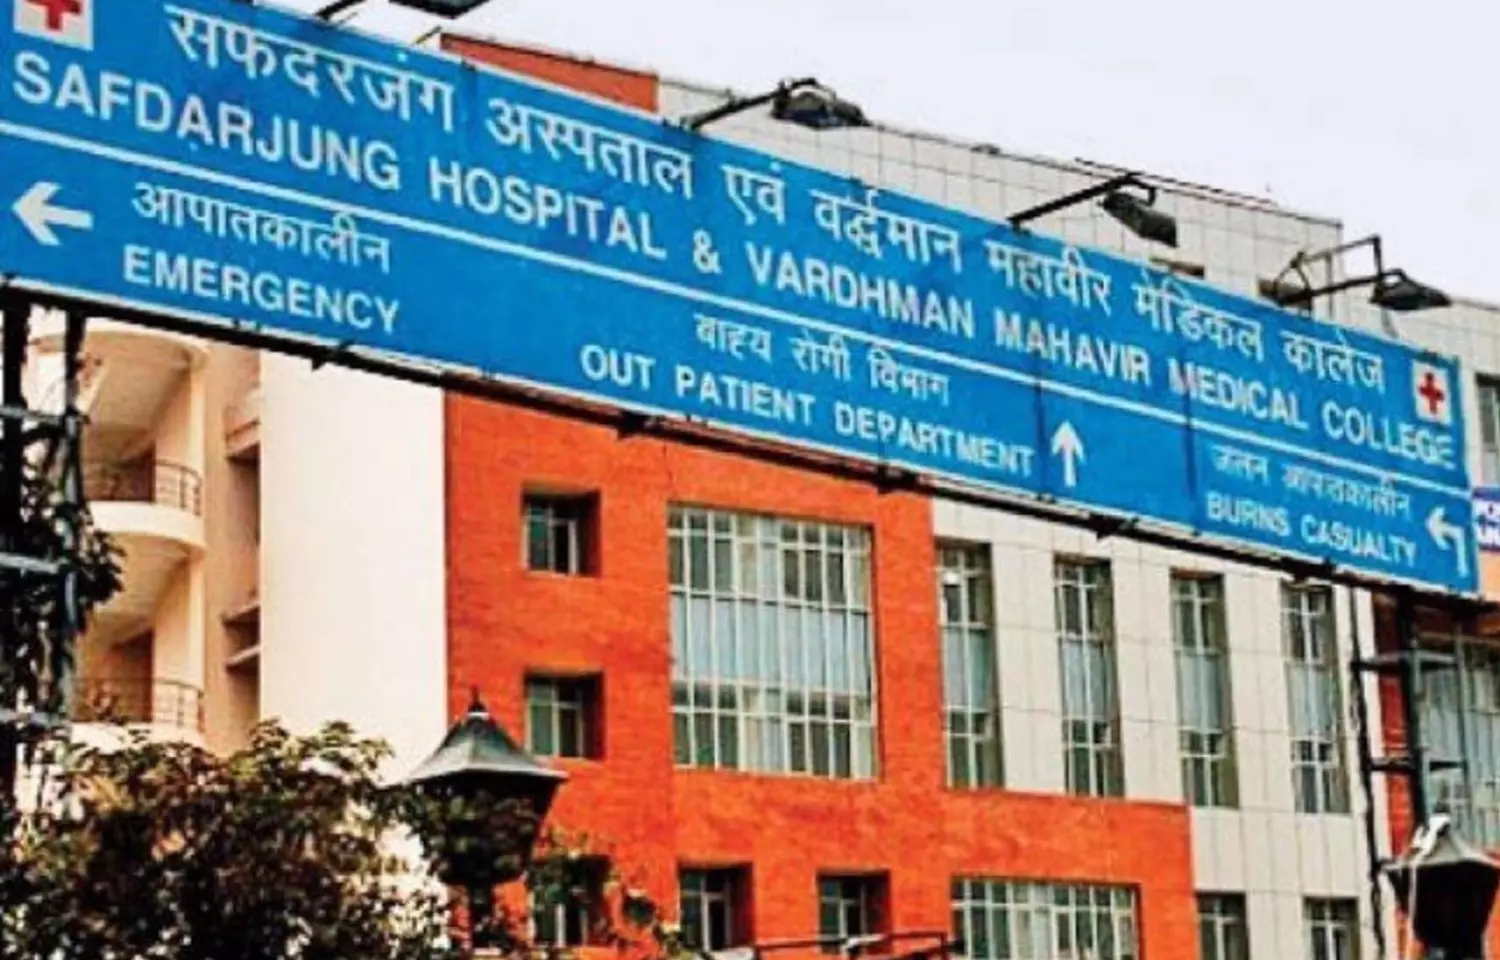 Safdarjung Hospital Resident Doctors complain of lack of hostel rooms